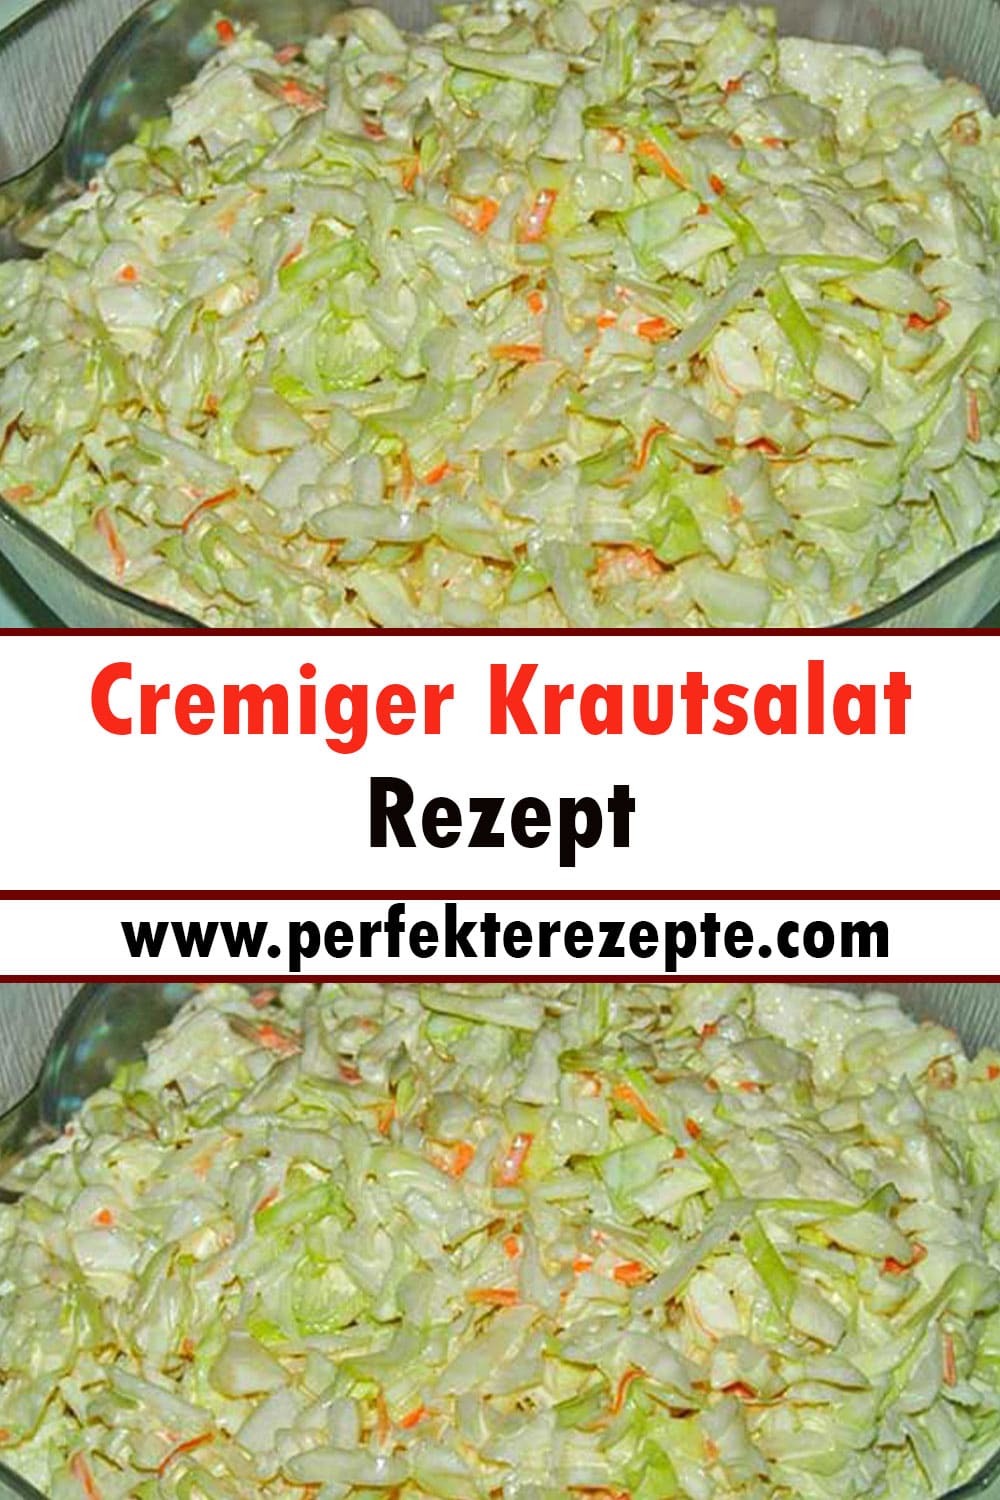 Cremiger Krautsalat Rezept